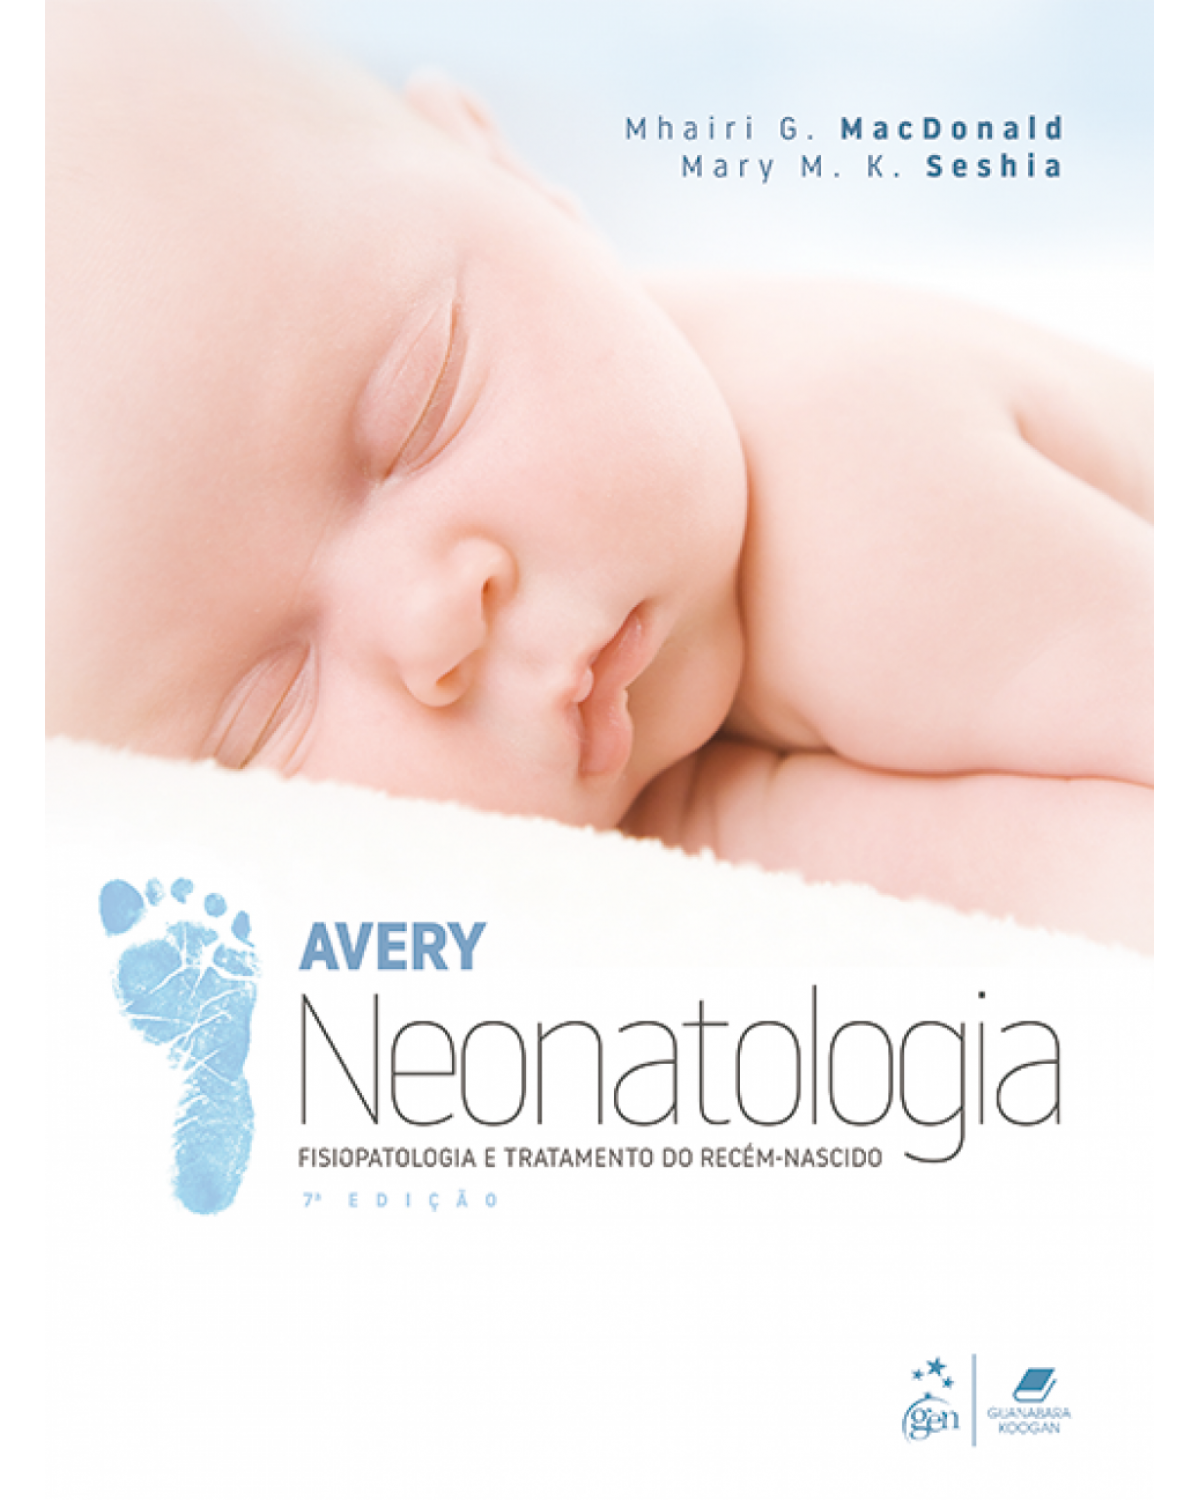 Avery - Neonatologia - fisiopatologia e tratamento do recém-nascido - 7ª Edição | 2018